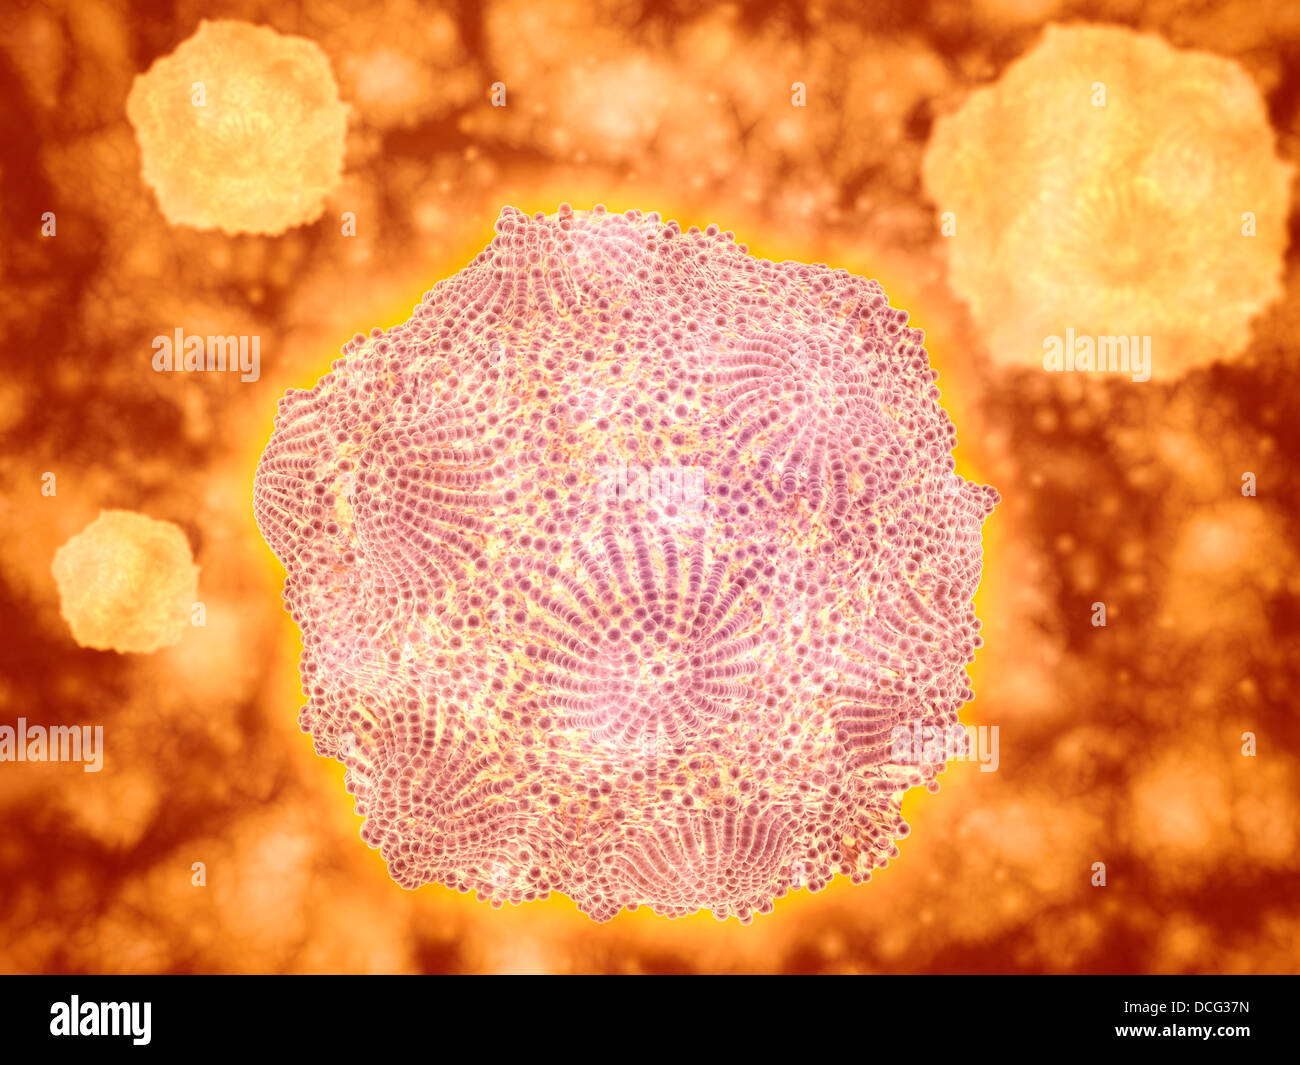 Microscopic view of Canine Parvovirus. Stock Photo